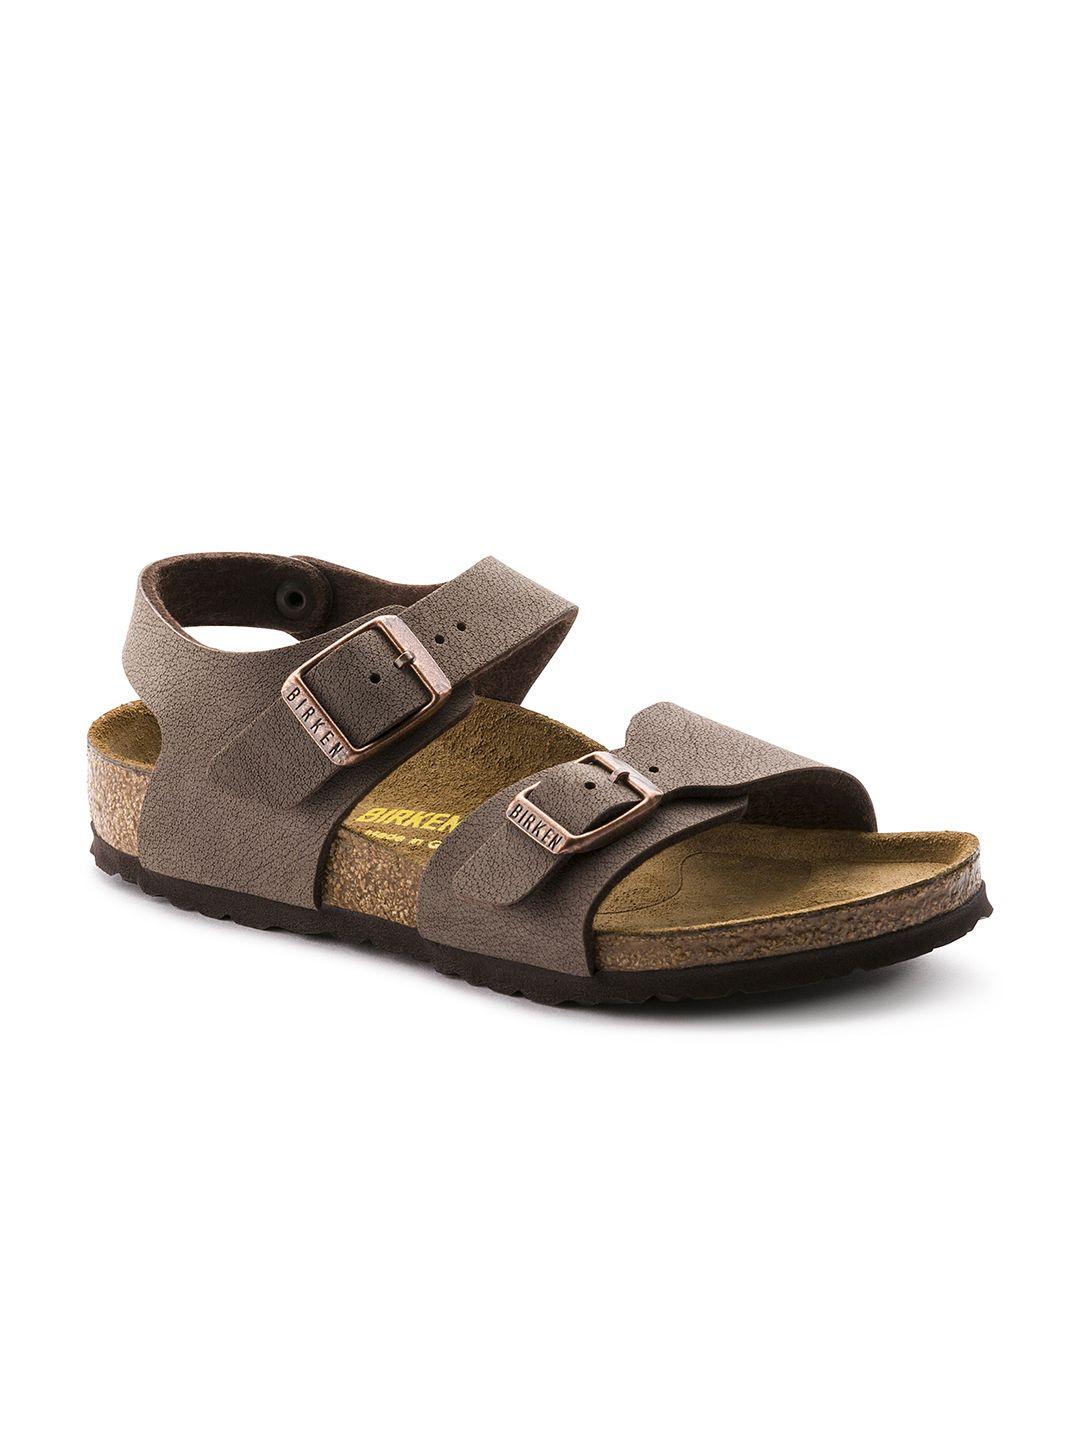 birkenstock brown new birko-flor nubuck narrow width new york sandals